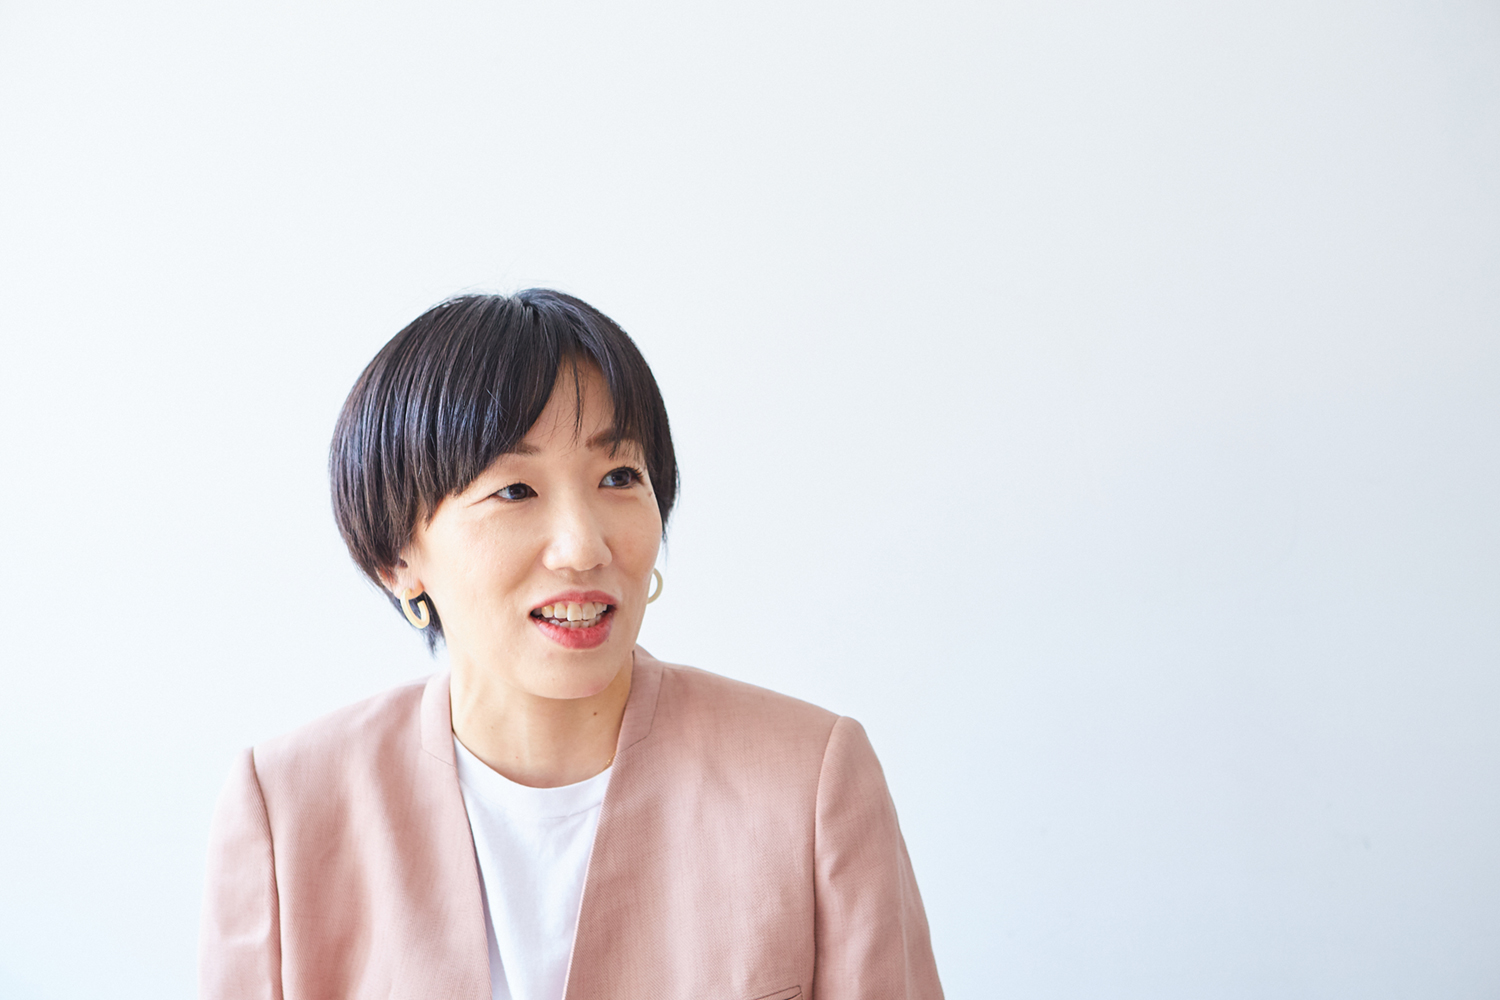 株式会社COCのブランディングデイレクターの千葉真由美さん。貞清さんと同様にお菓子の開発から店舗デザインや販売戦略まで担当している